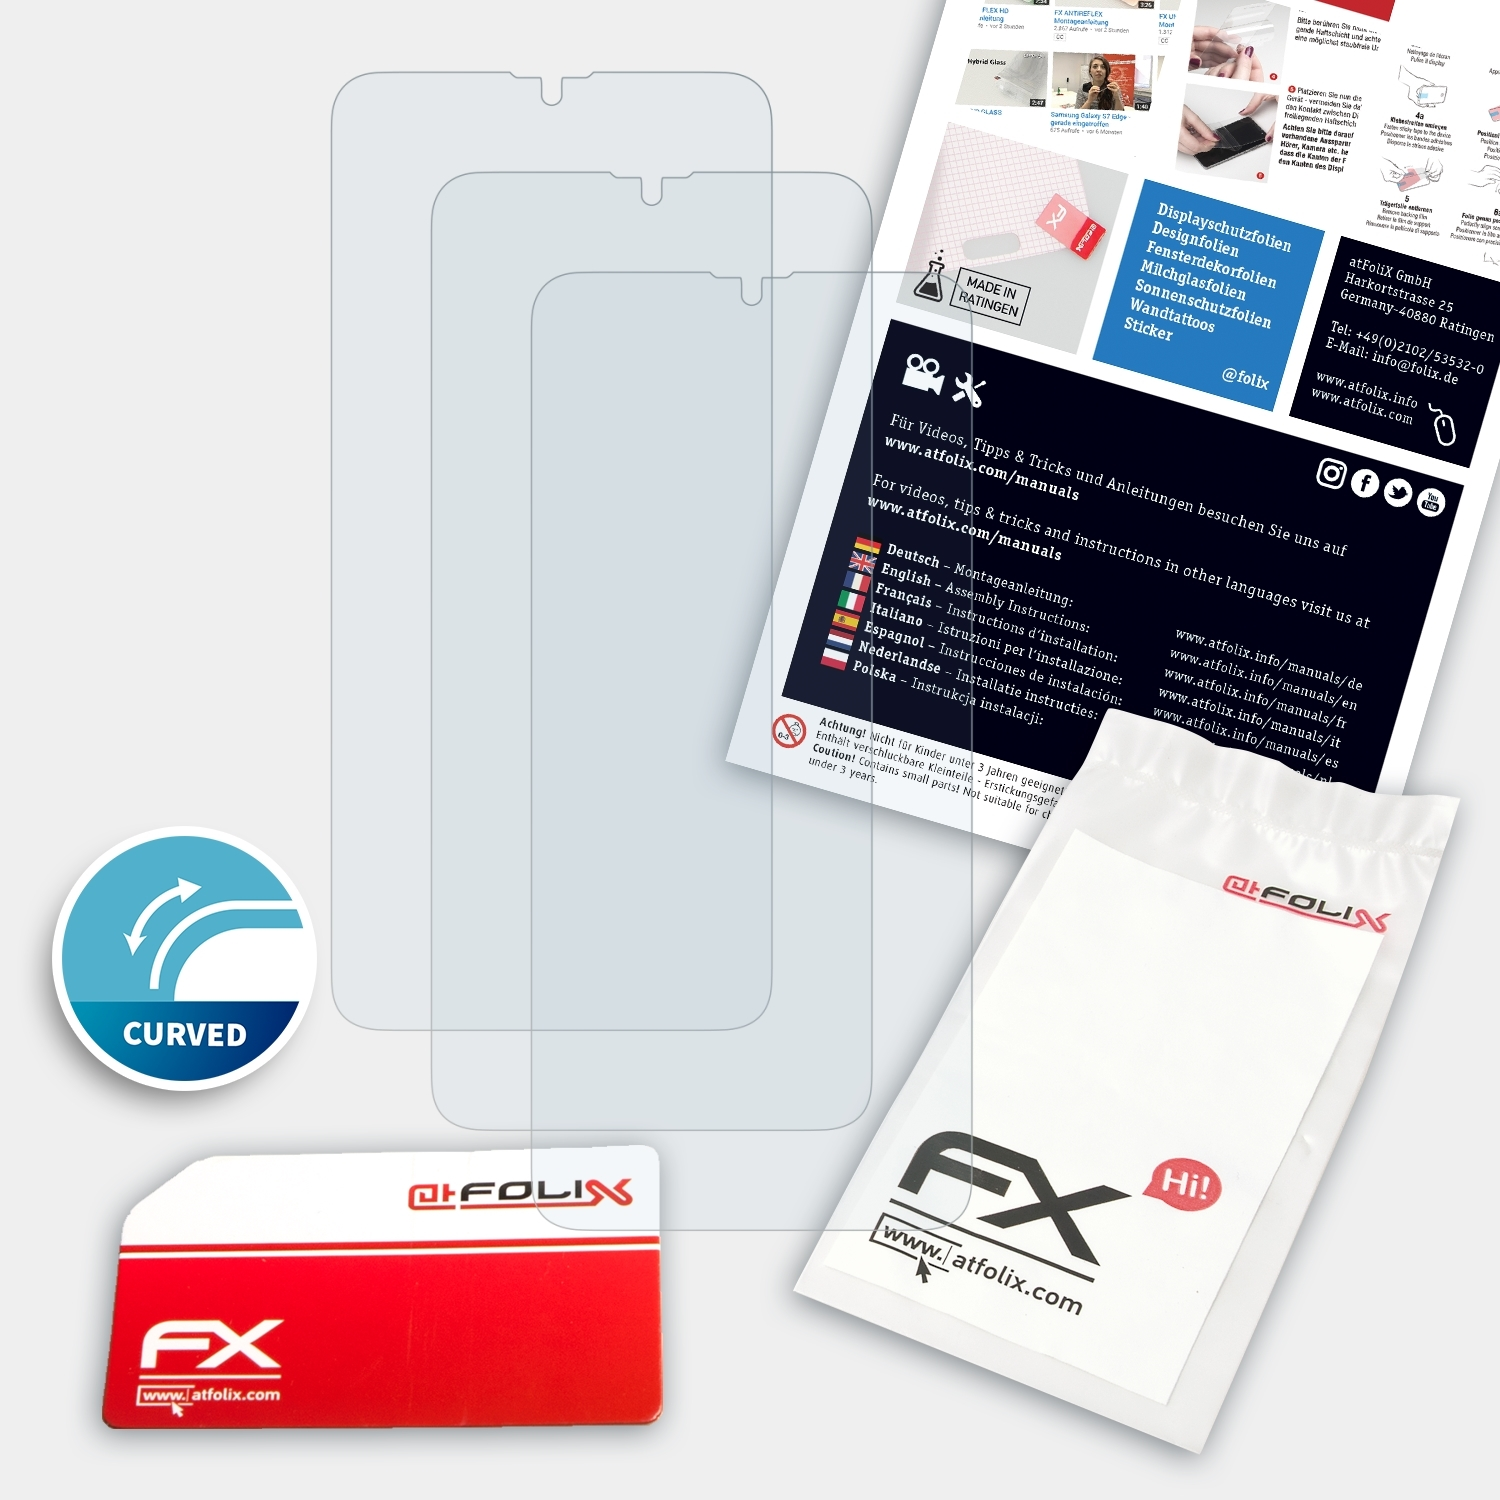 ATFOLIX 3x A20s) FX-ActiFleX Samsung Galaxy Displayschutz(für